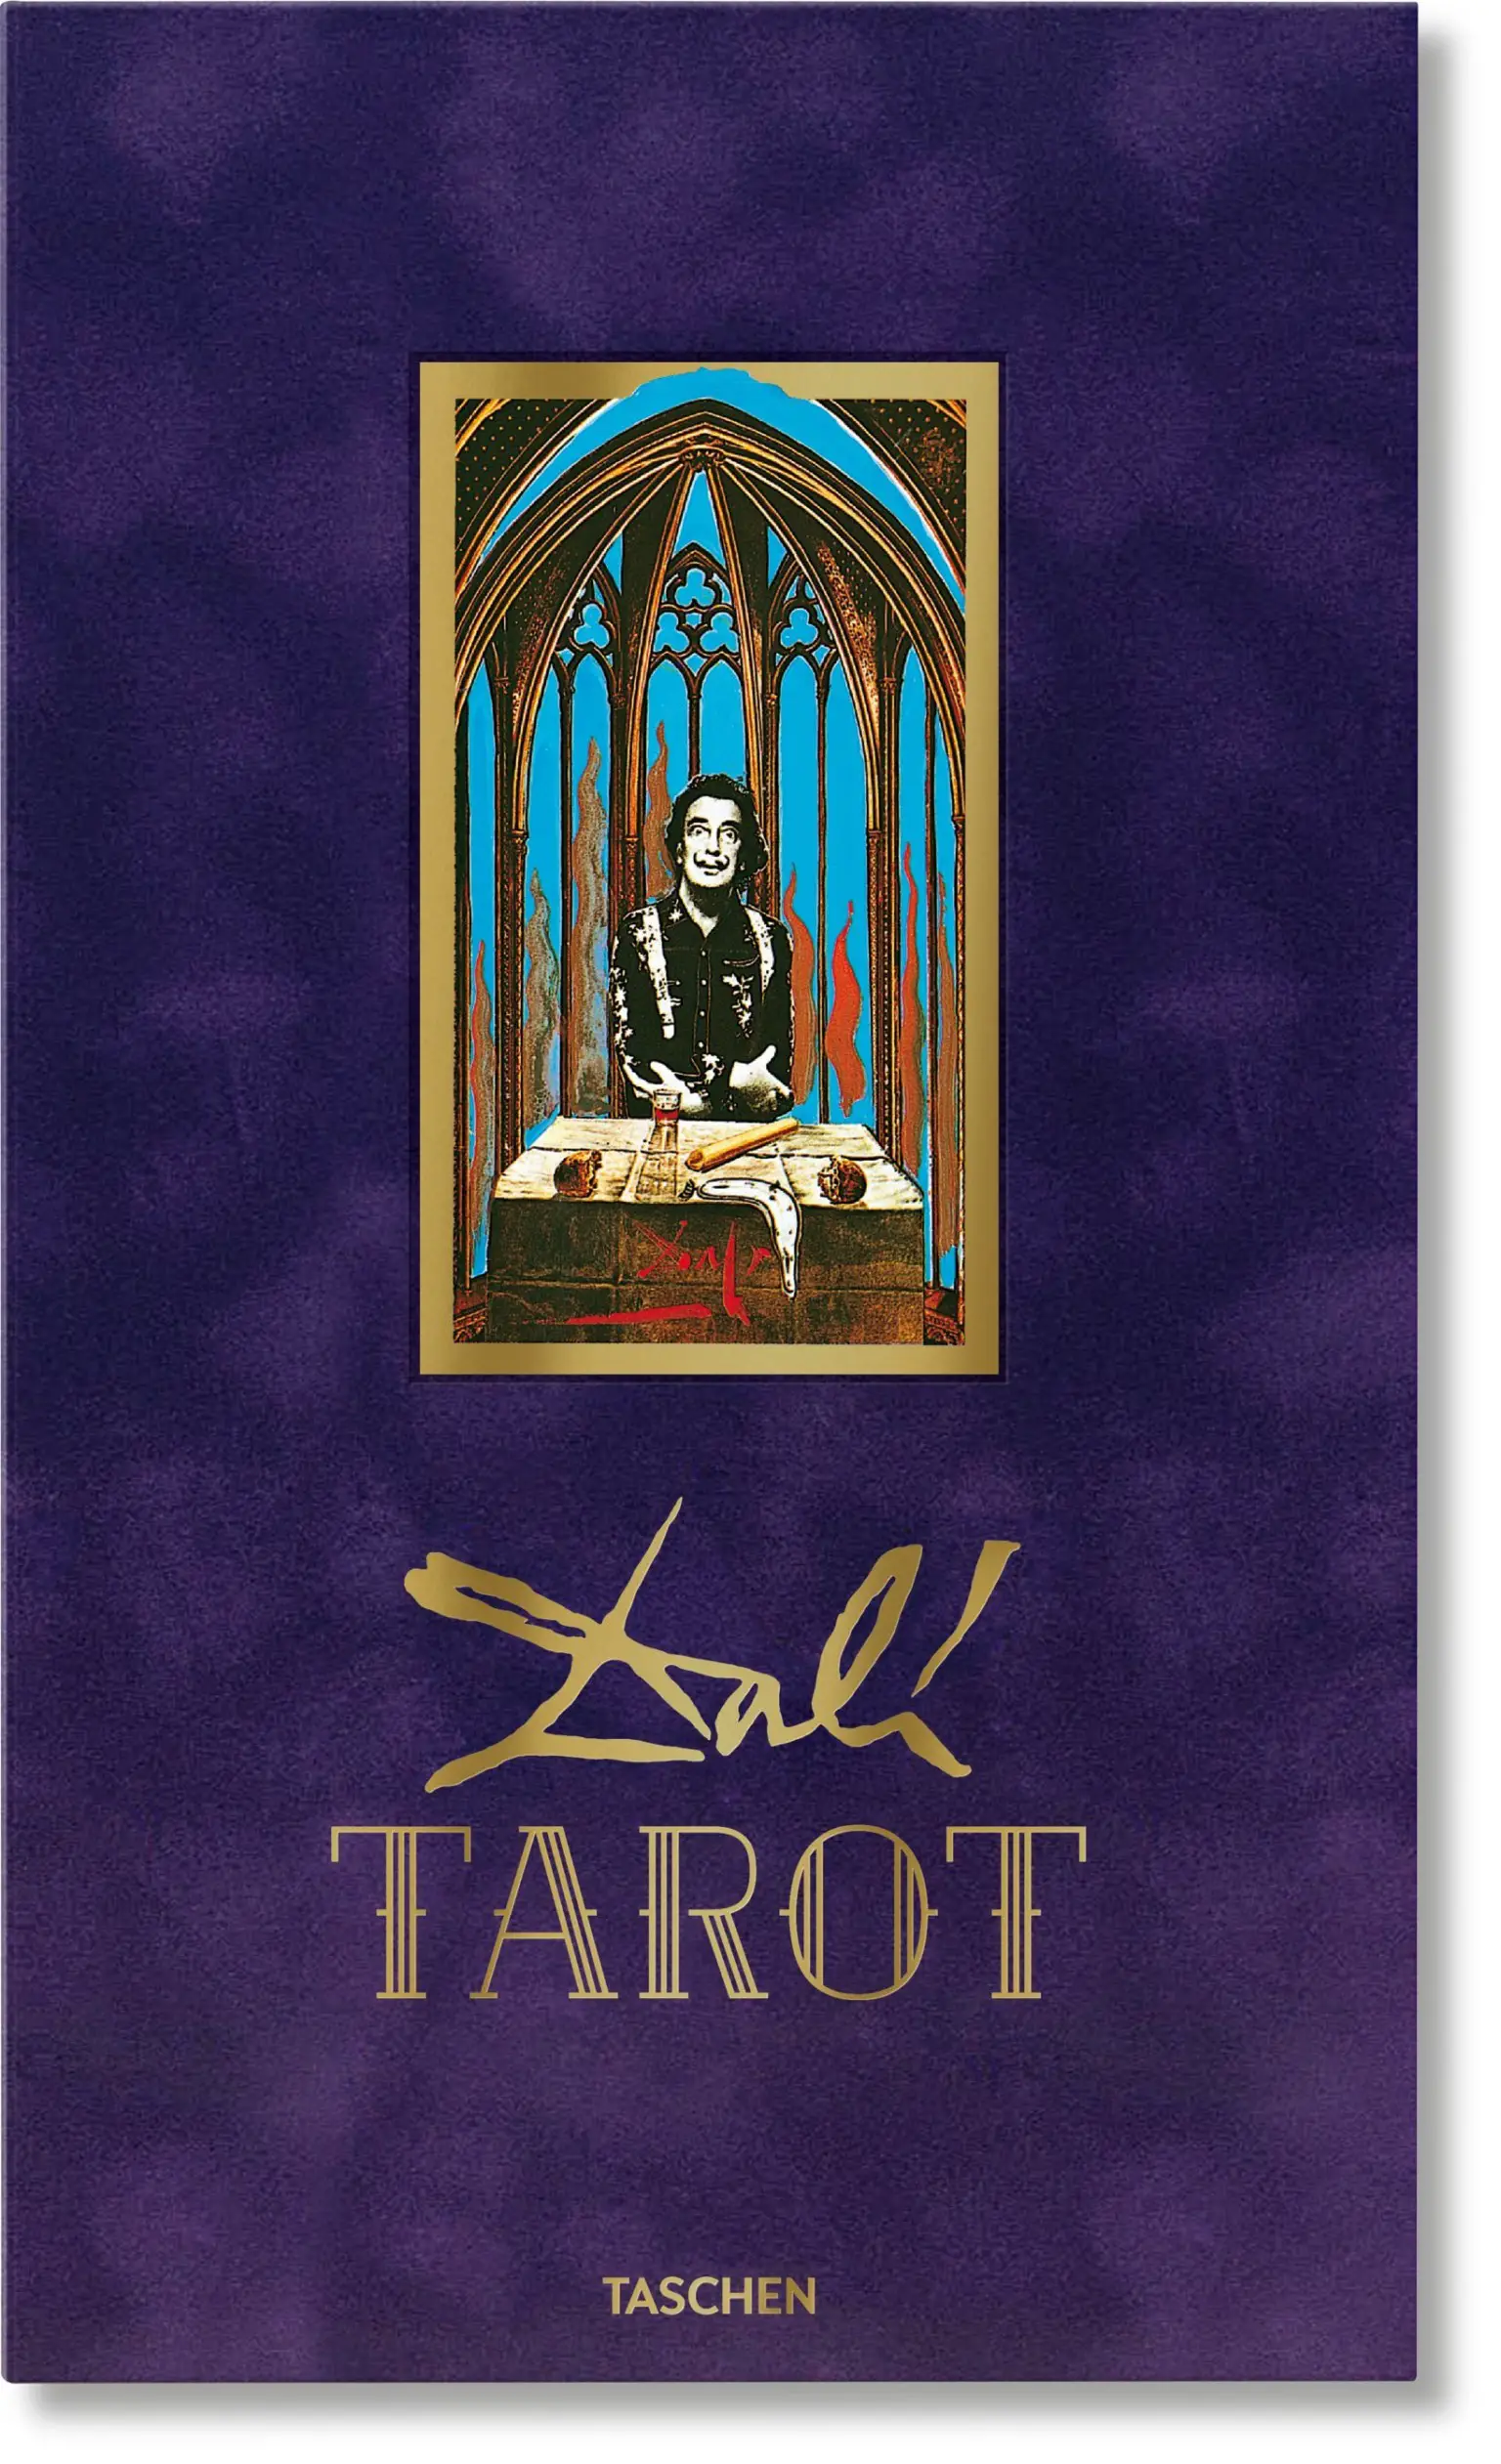 va dali tarot new edition cover 44640